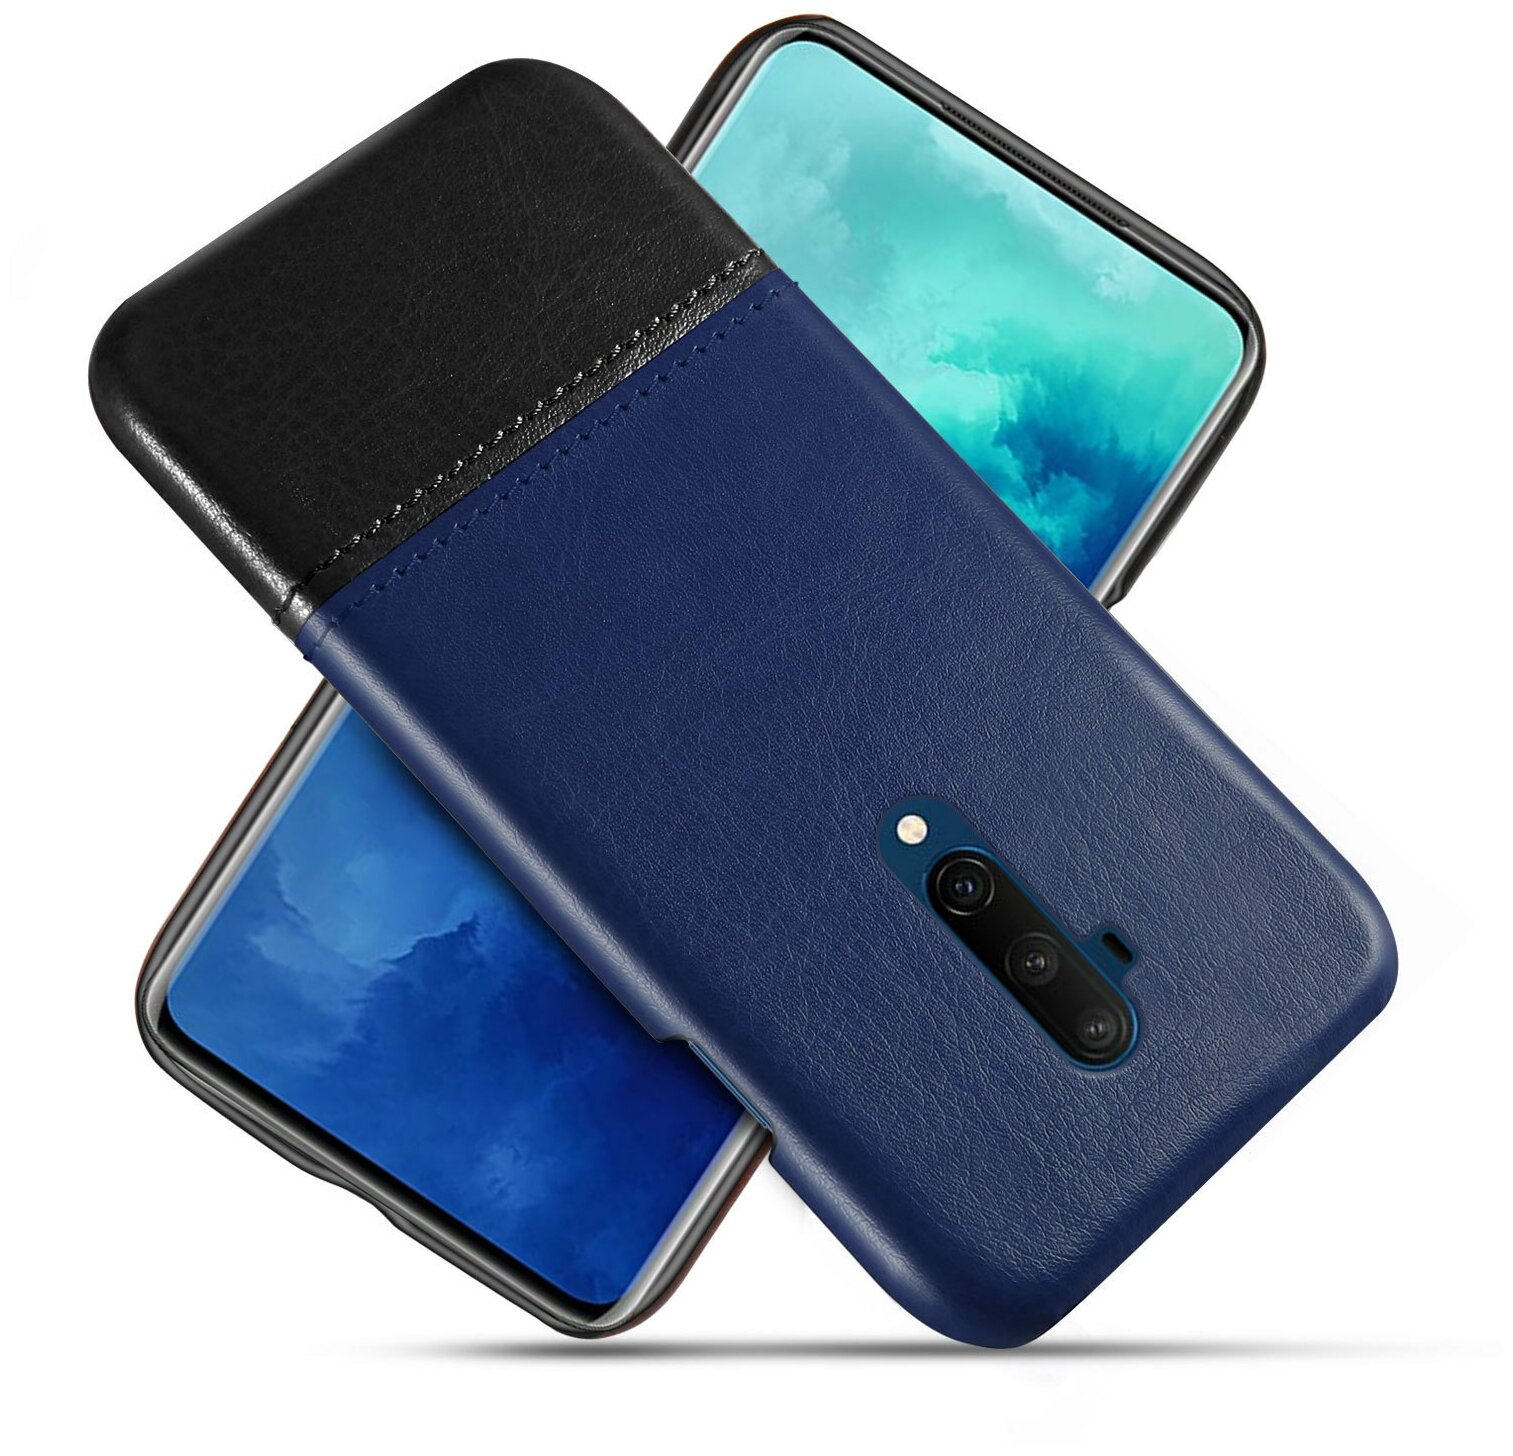 Чехол панель-накладка Чехол. ру для OnePlus 7T Pro обтянутый качественной импортной кожей двухцветный дизайнерский с элегантной прошивкой сине-черный